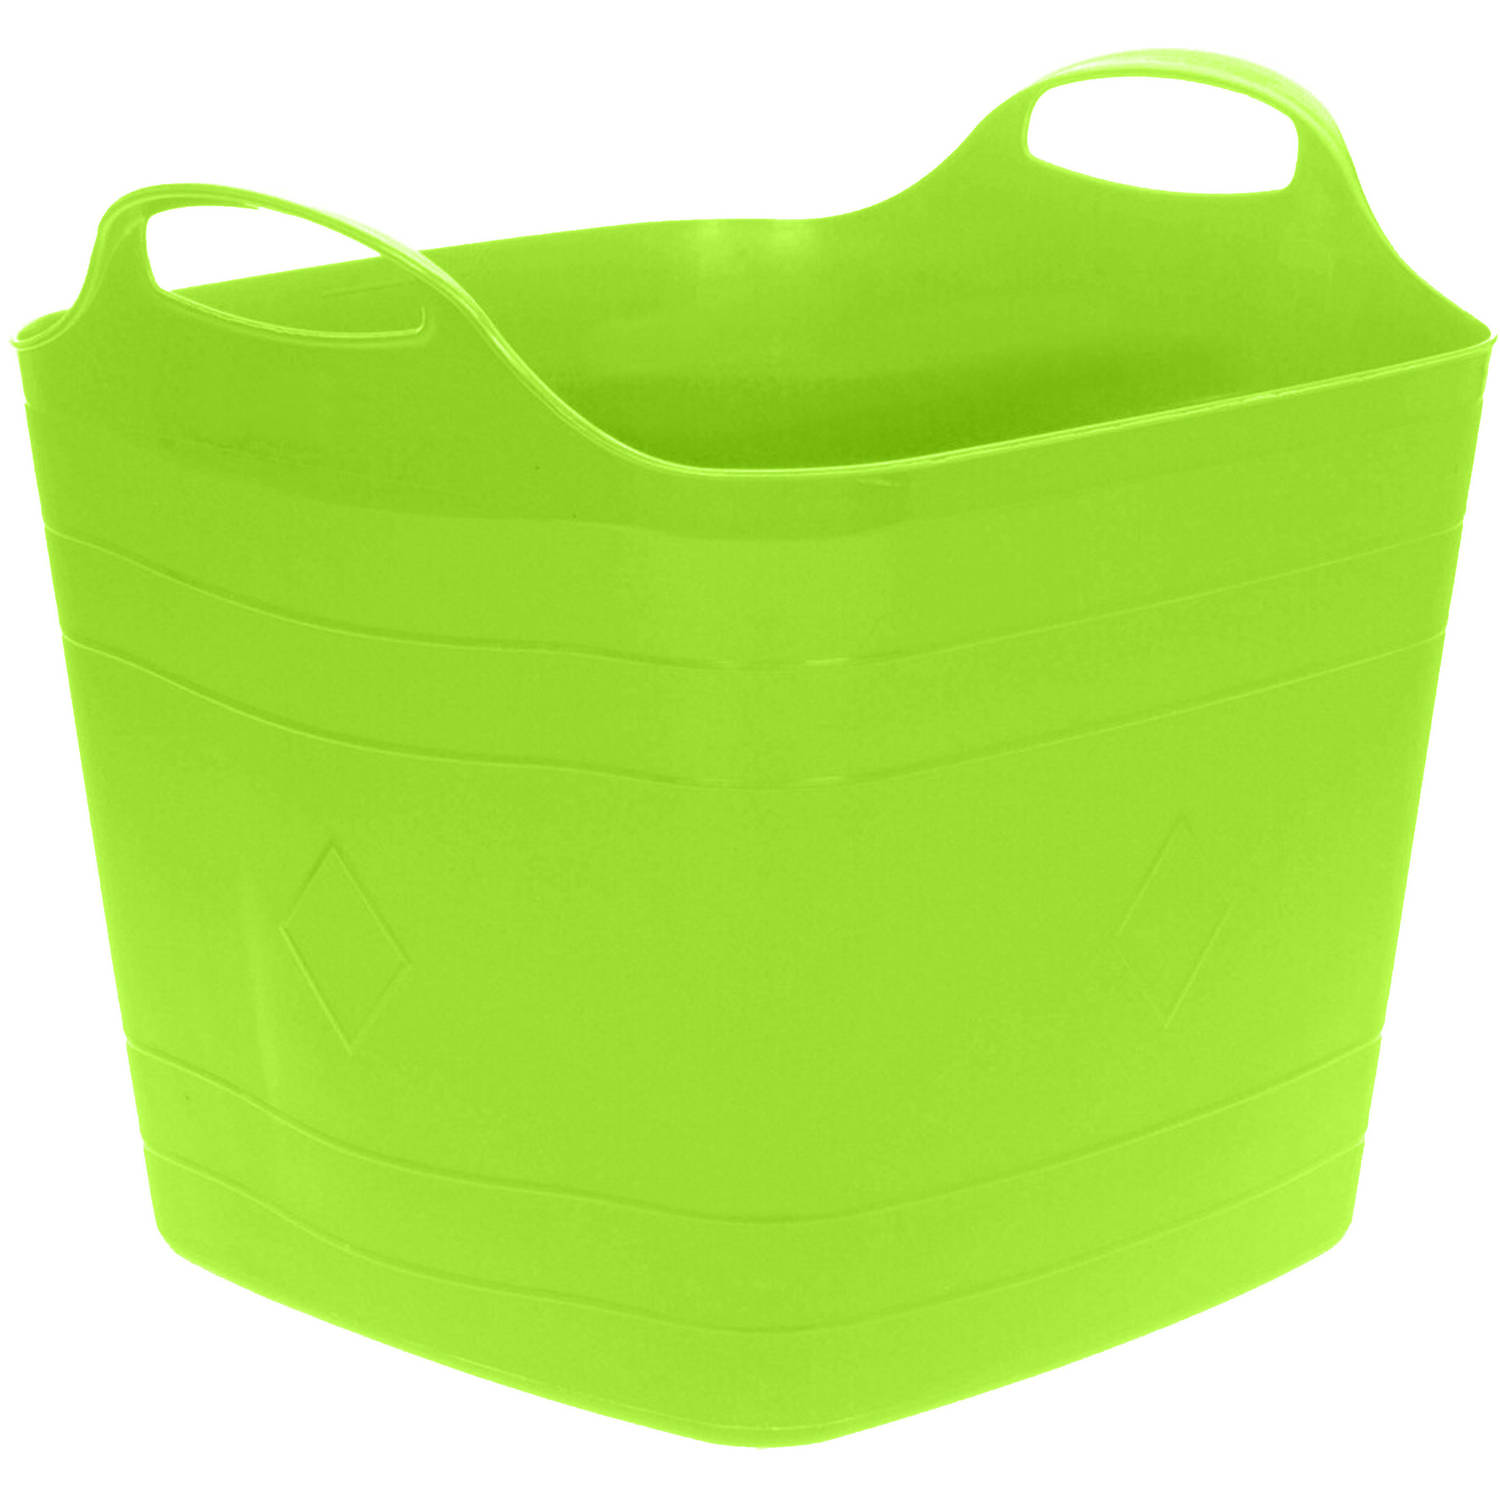 Flexibele emmer - groen - 15 liter - kunststof - vierkant - 30 x 29 cm - Wasmanden